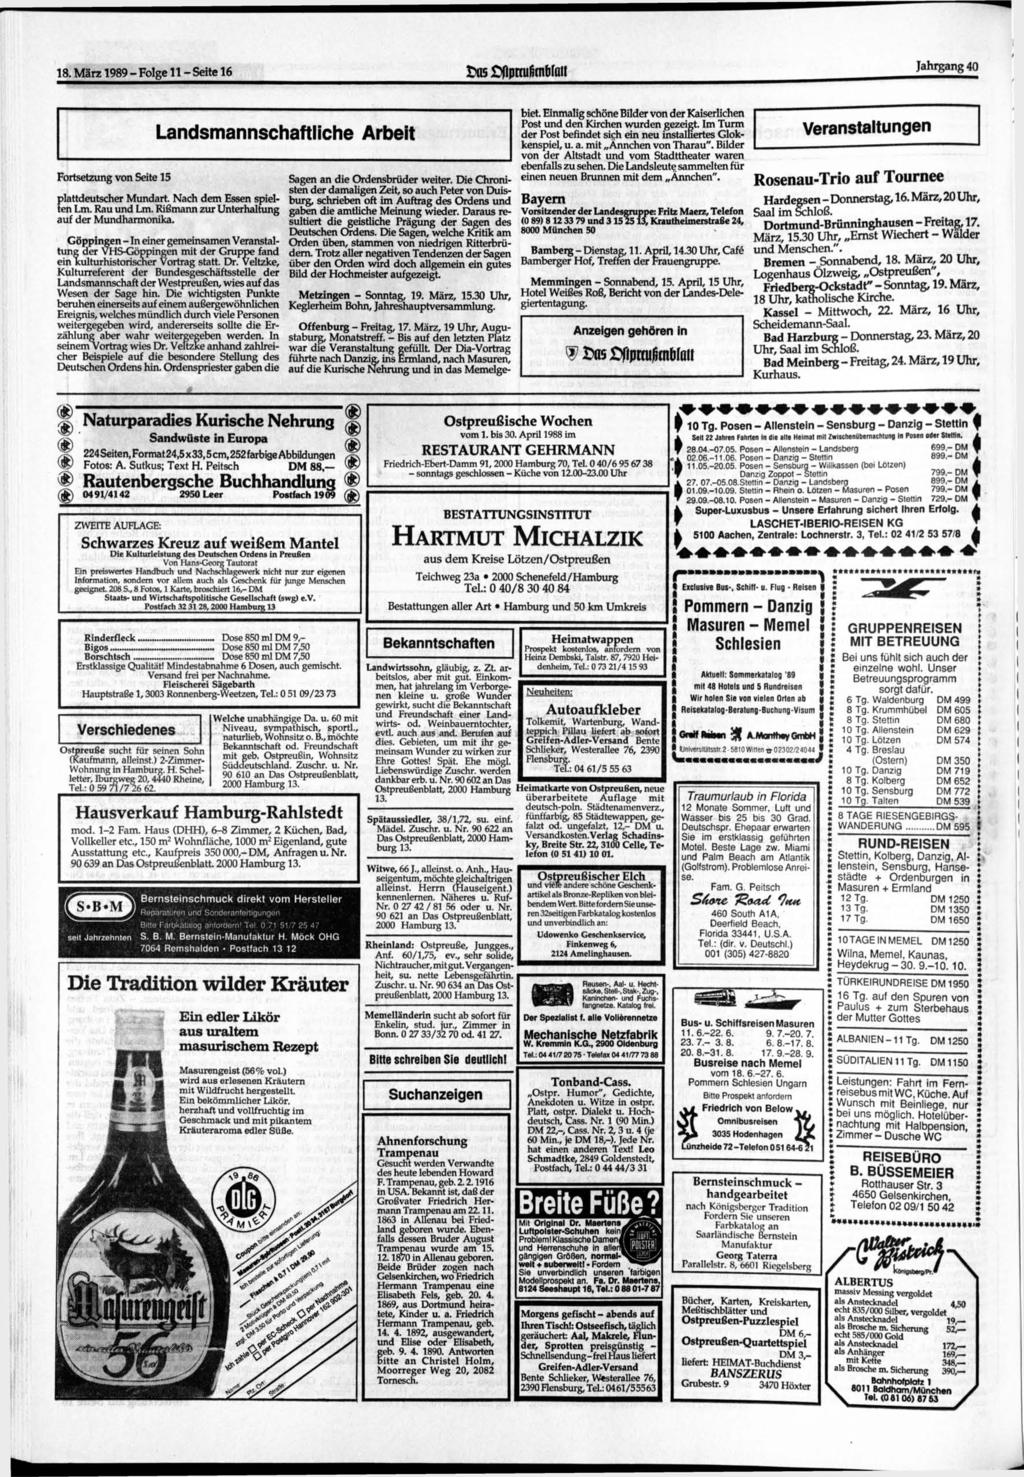 18. 1989 - Folge 11 - Seite 16 os flpmifimbfoil Jahrgang 40 Fortsetzung von Seite 15 Landsmannschaftliche Arbeit plattdeutscher Mundart. Nach dem Essen spielten Lm. Rau und Lm.